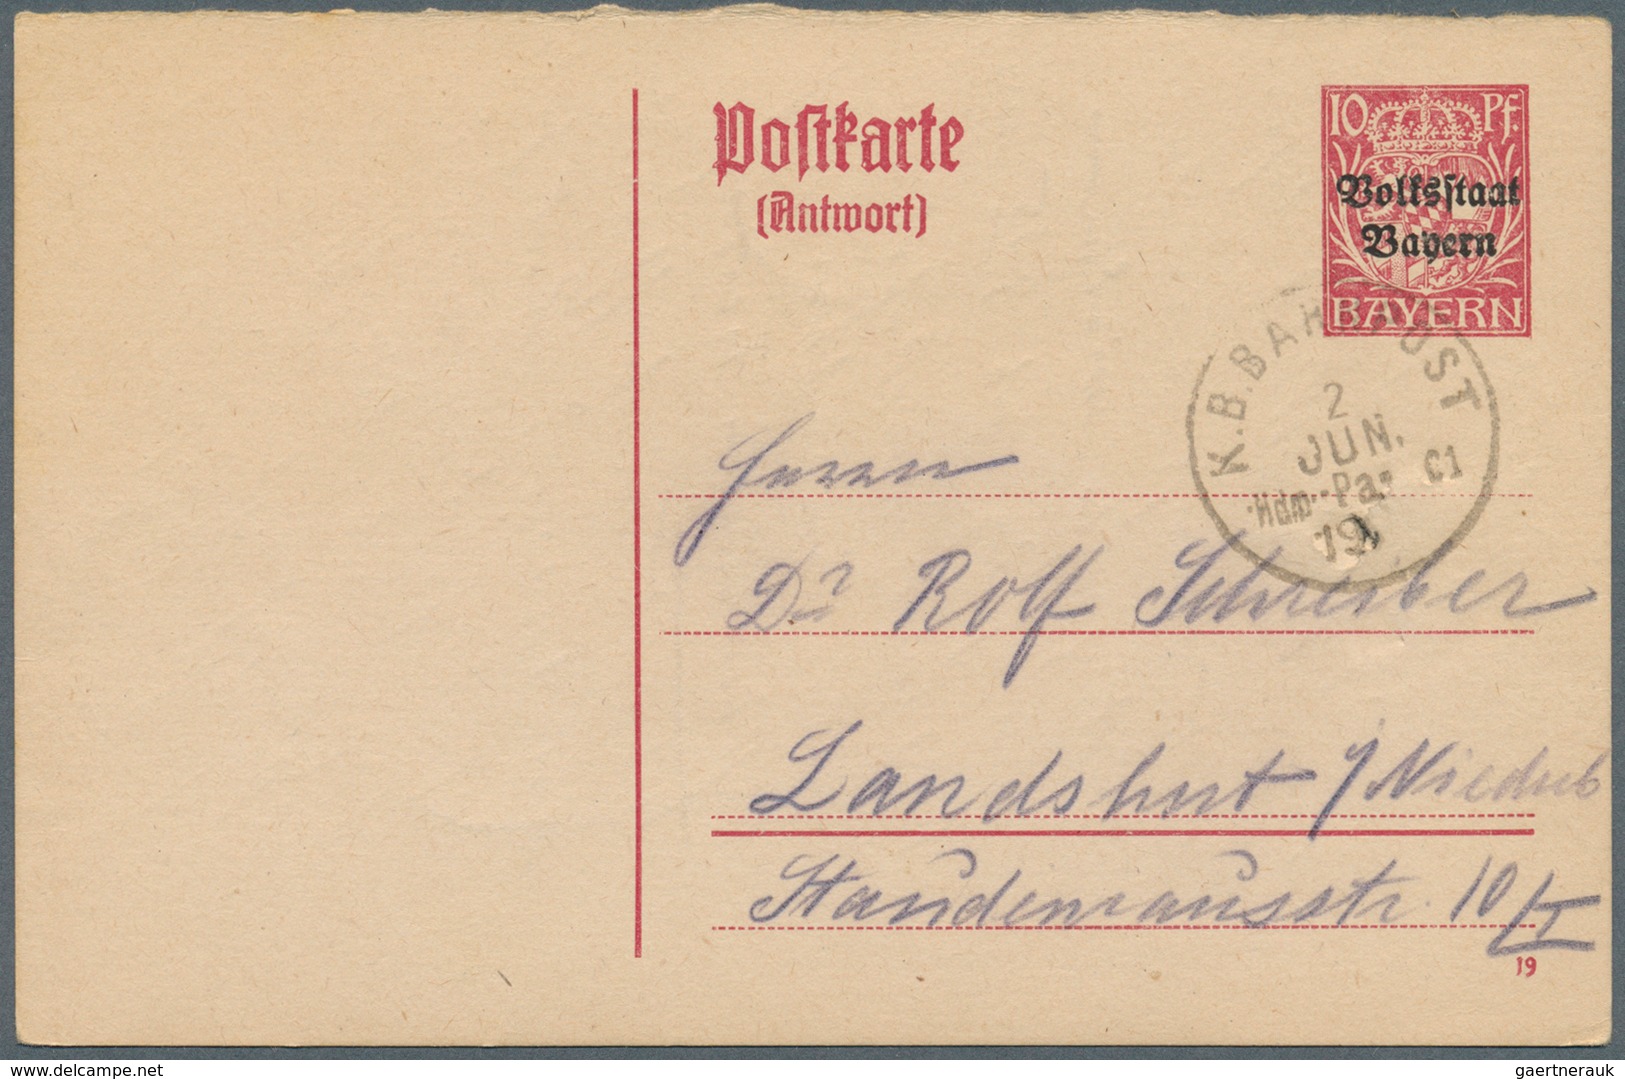 31233 Bayern - Ganzsachen: 1874/1920, unfangreicher Lagerbestand in 4 Kartons mit Karten, Doppelkarten, Um